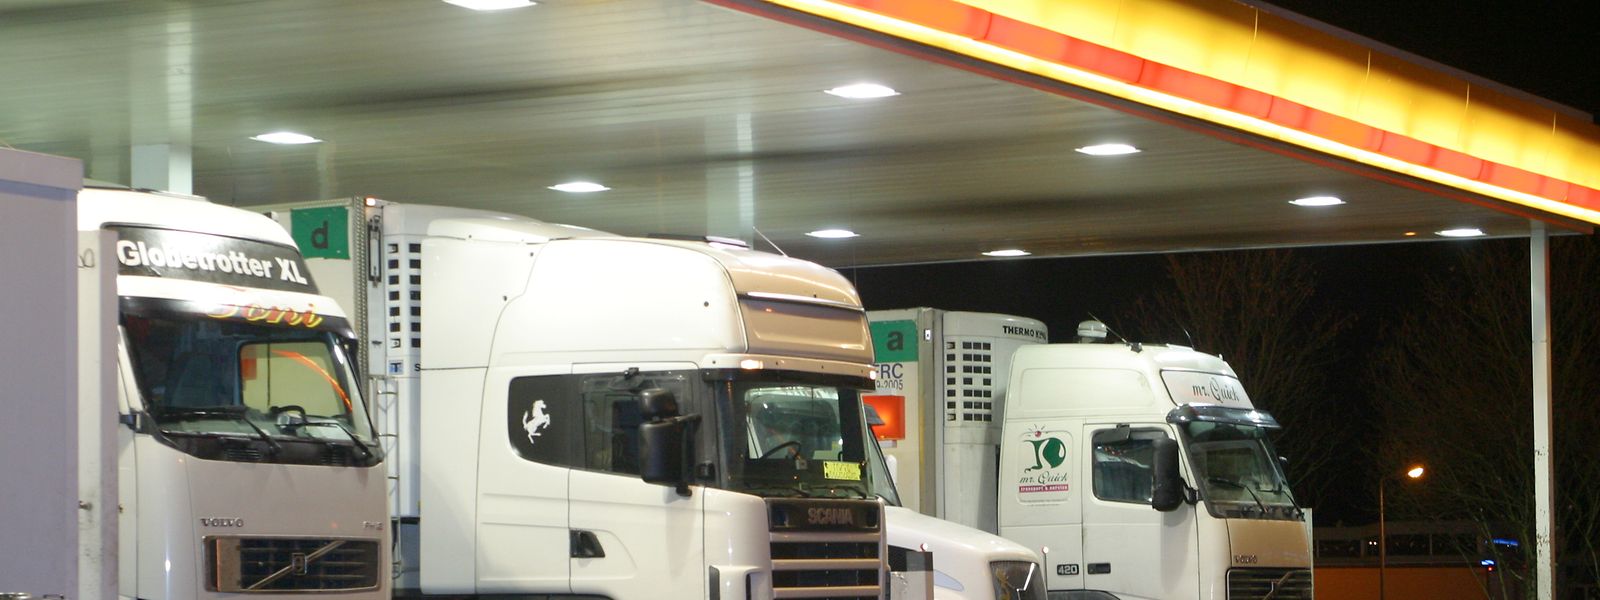 An den Tankstellen in Luxemburg treffen sich Lastwagen aus ganz Europa – bis vor Kurzem saßen in vielen von ihnen ukrainische Fahrer hinter dem Steuer.